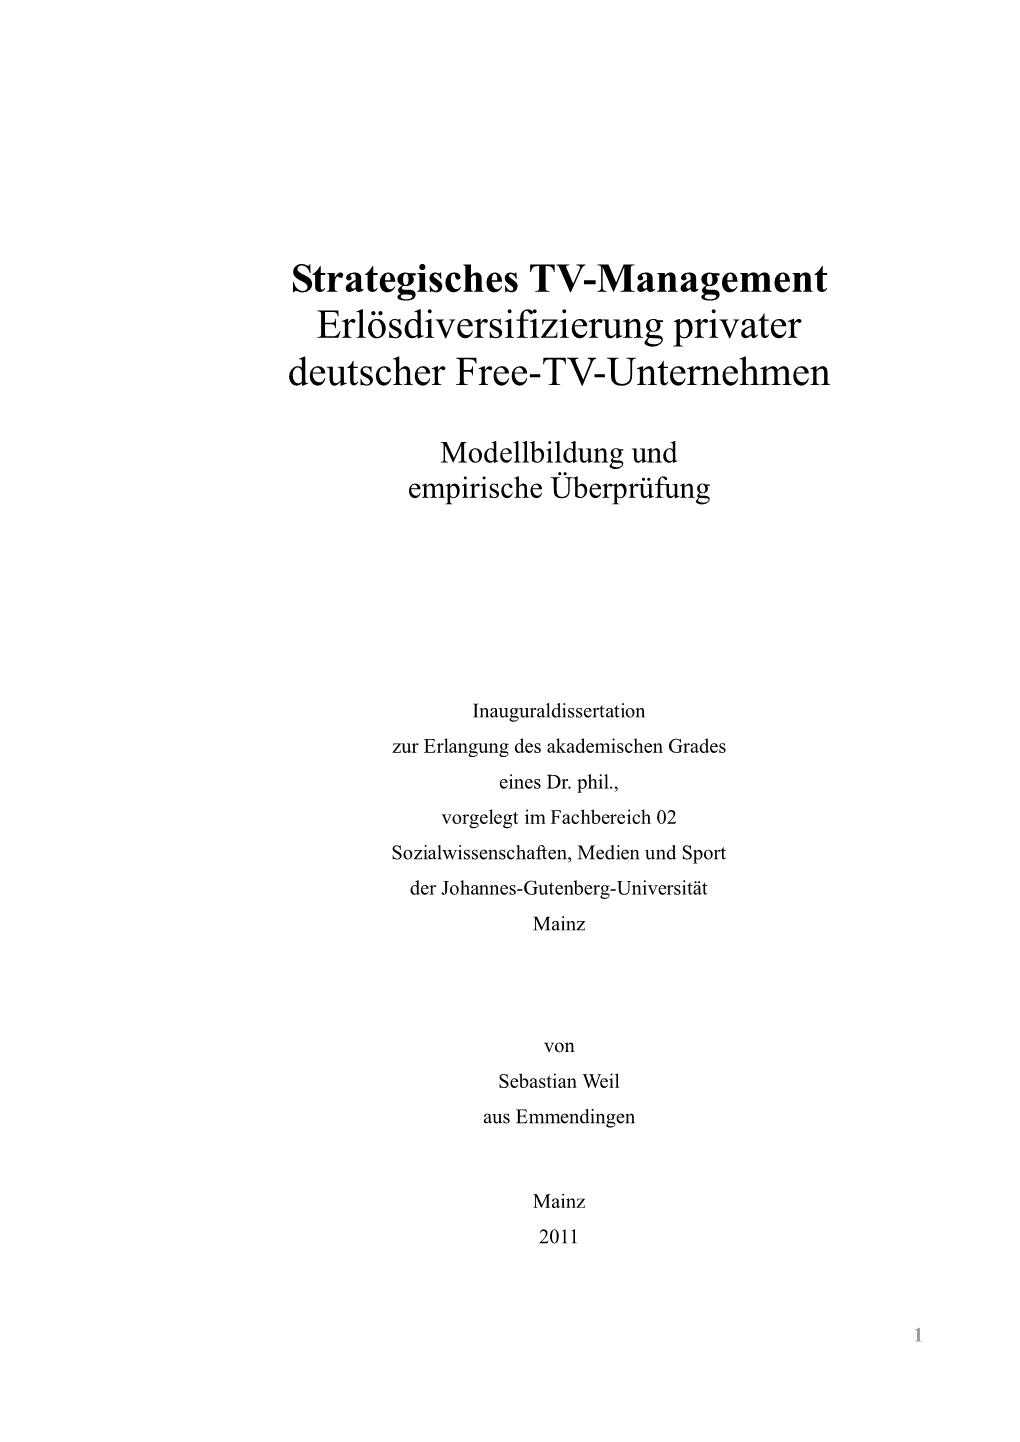 Strategisches TV-Management Erlösdiversifizierung Privater Deutscher Free-TV-Unternehmen